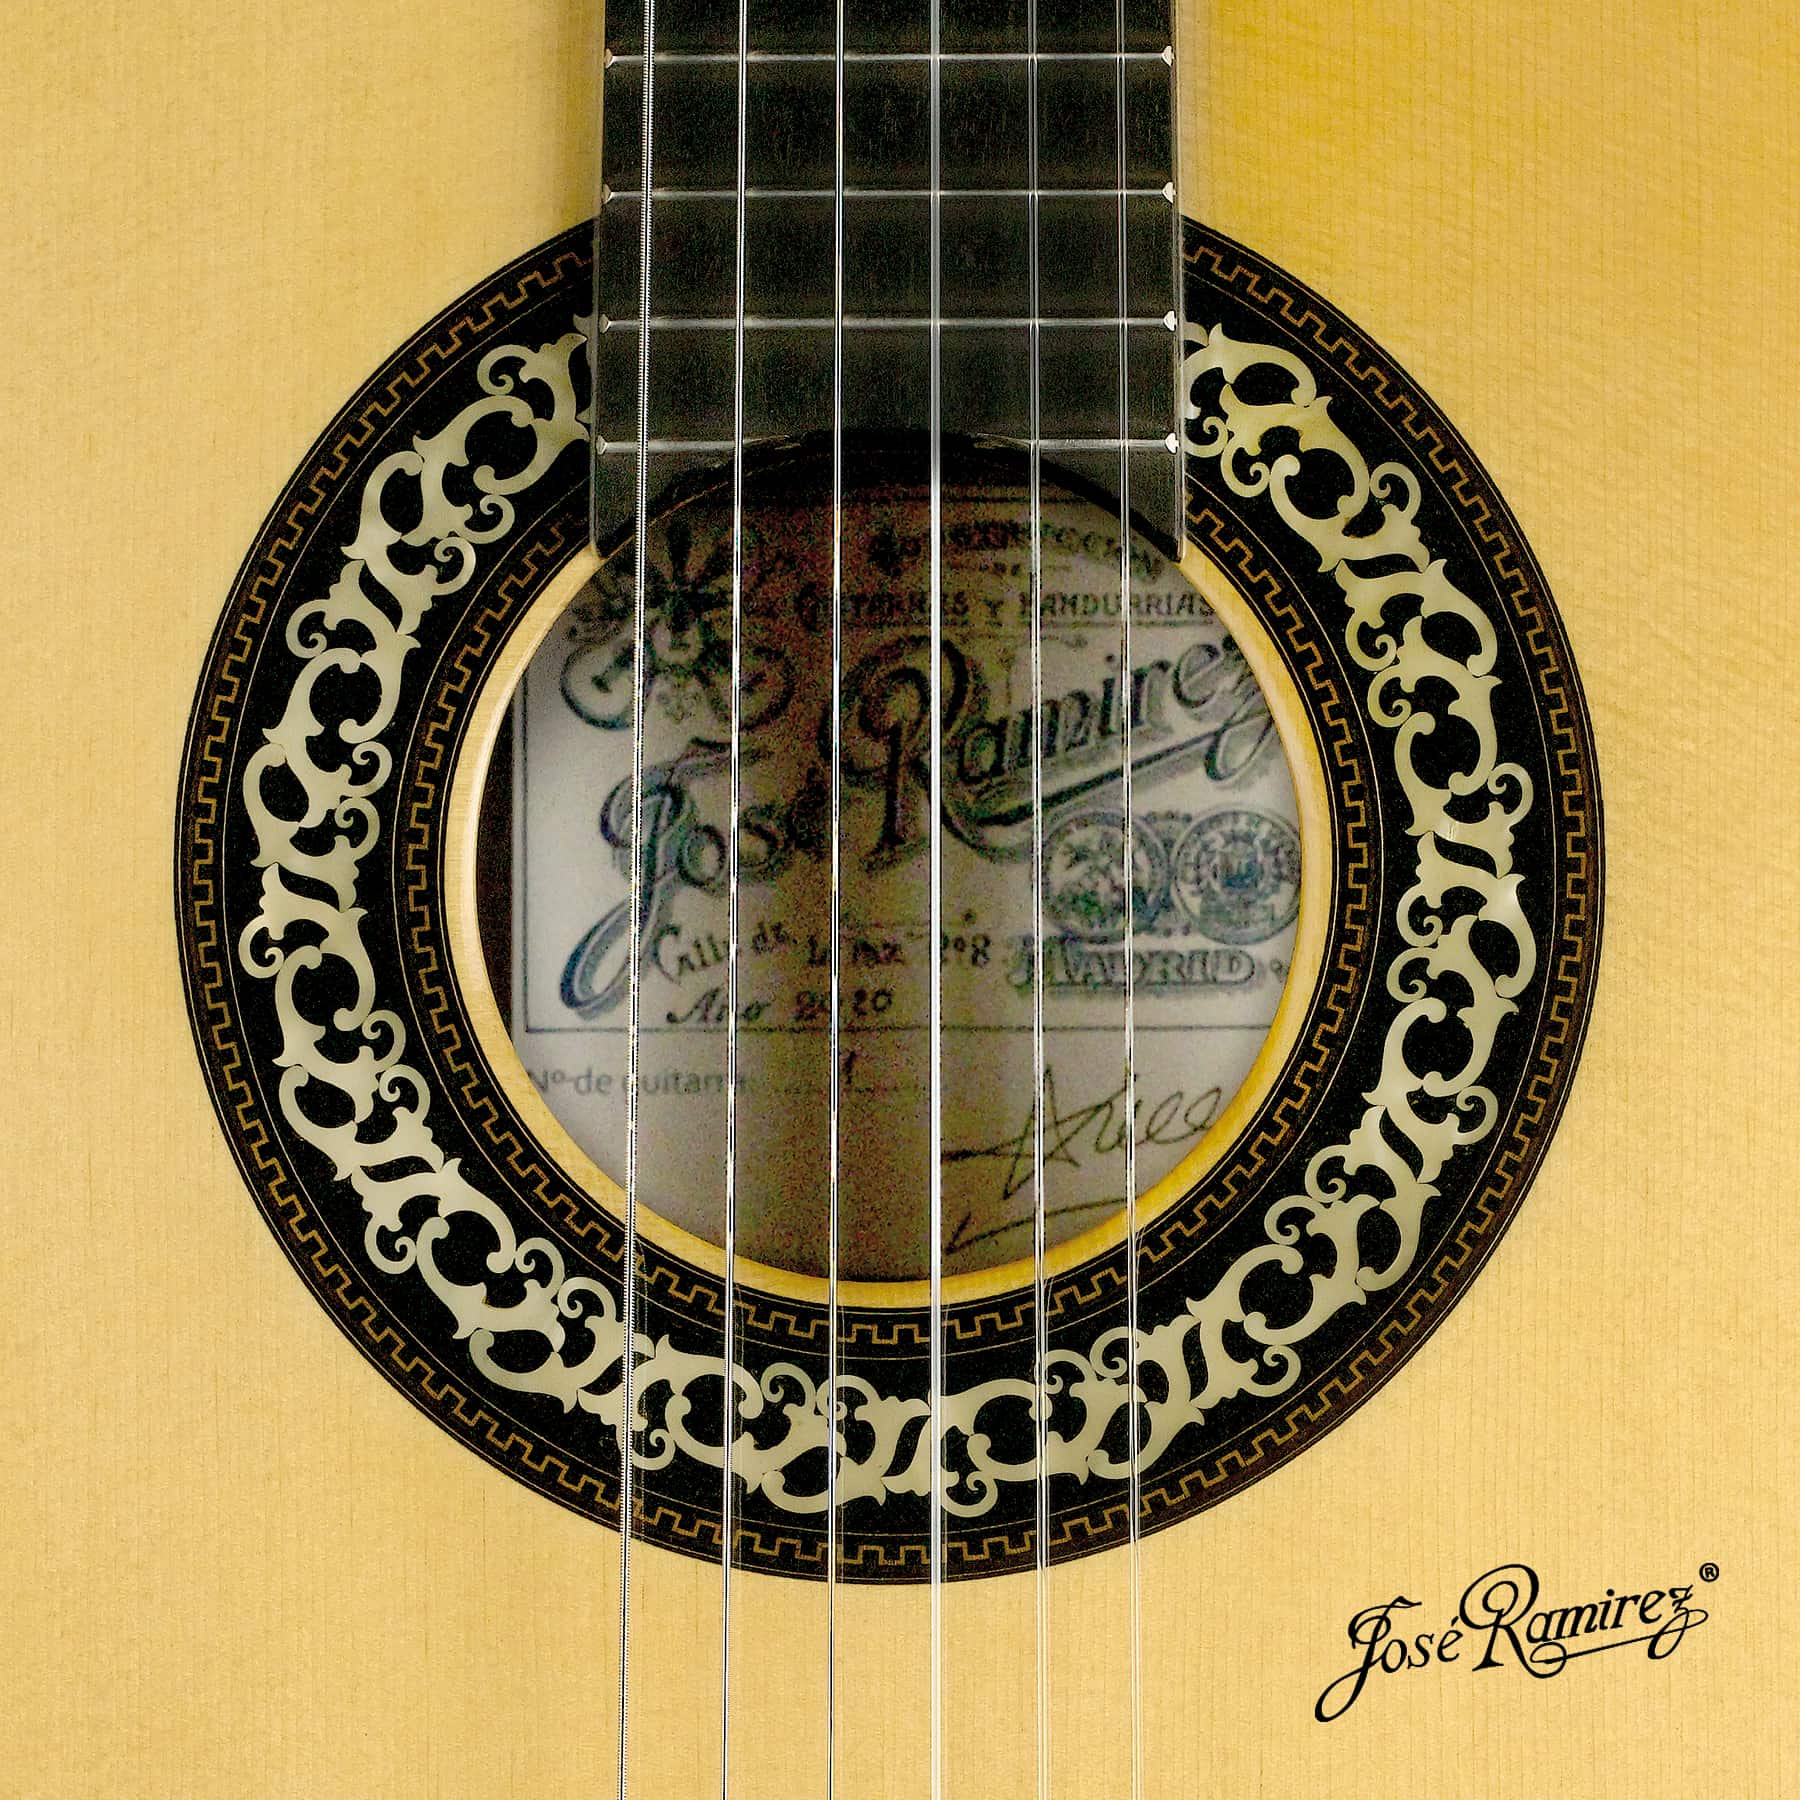 Boca de la guitarra Mangoré